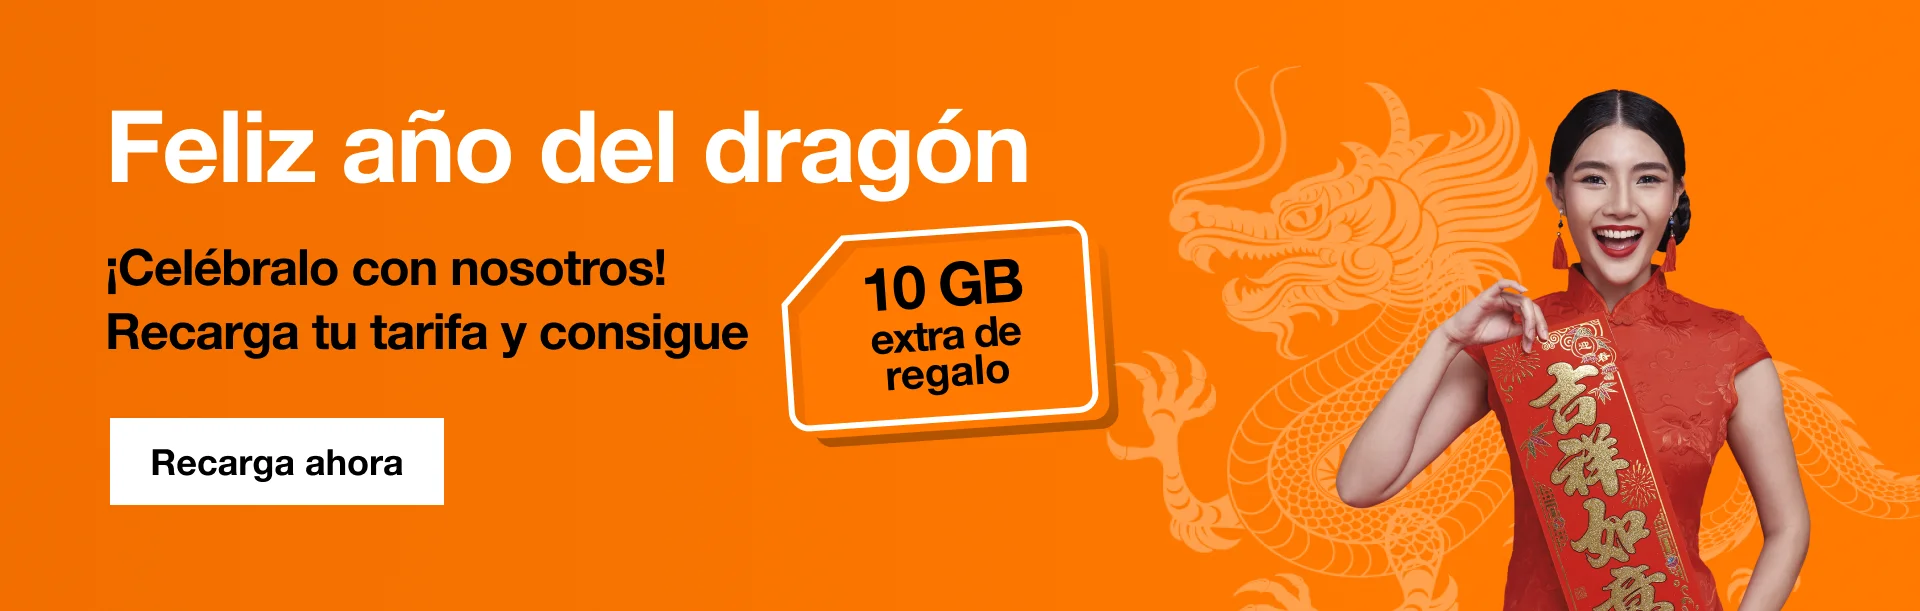 Orange Spain - Tarjeta SIM Prepago 25GB en España| 5€ de saldo | 5.000  Minutos Nacionales | 50 Minutos internacionales | Activación Online Solo en  www